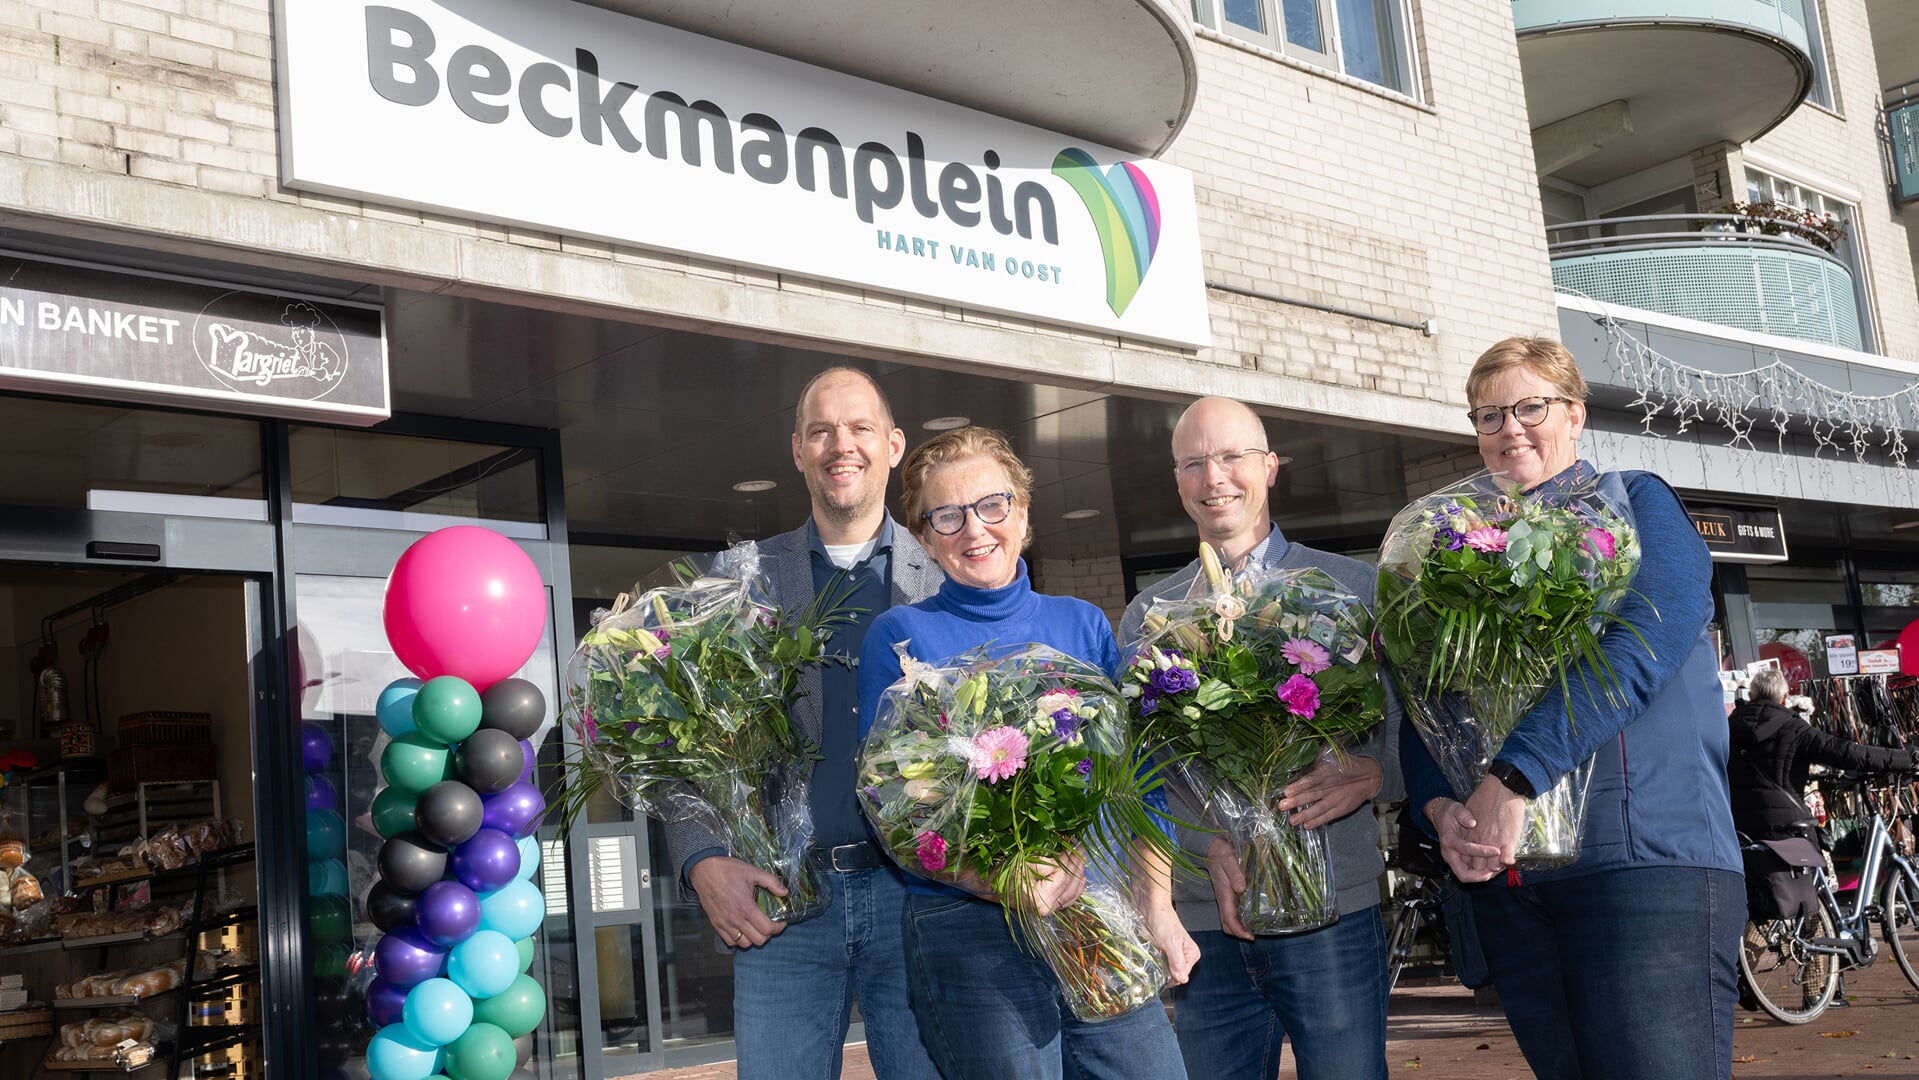 Ondernemers Beckmanplein blij met nieuwe naam. V.l.n.r Elbert van denDoel, Margriet Verbeek, Erik van Mil en Mariëlle Bouwhuis.  